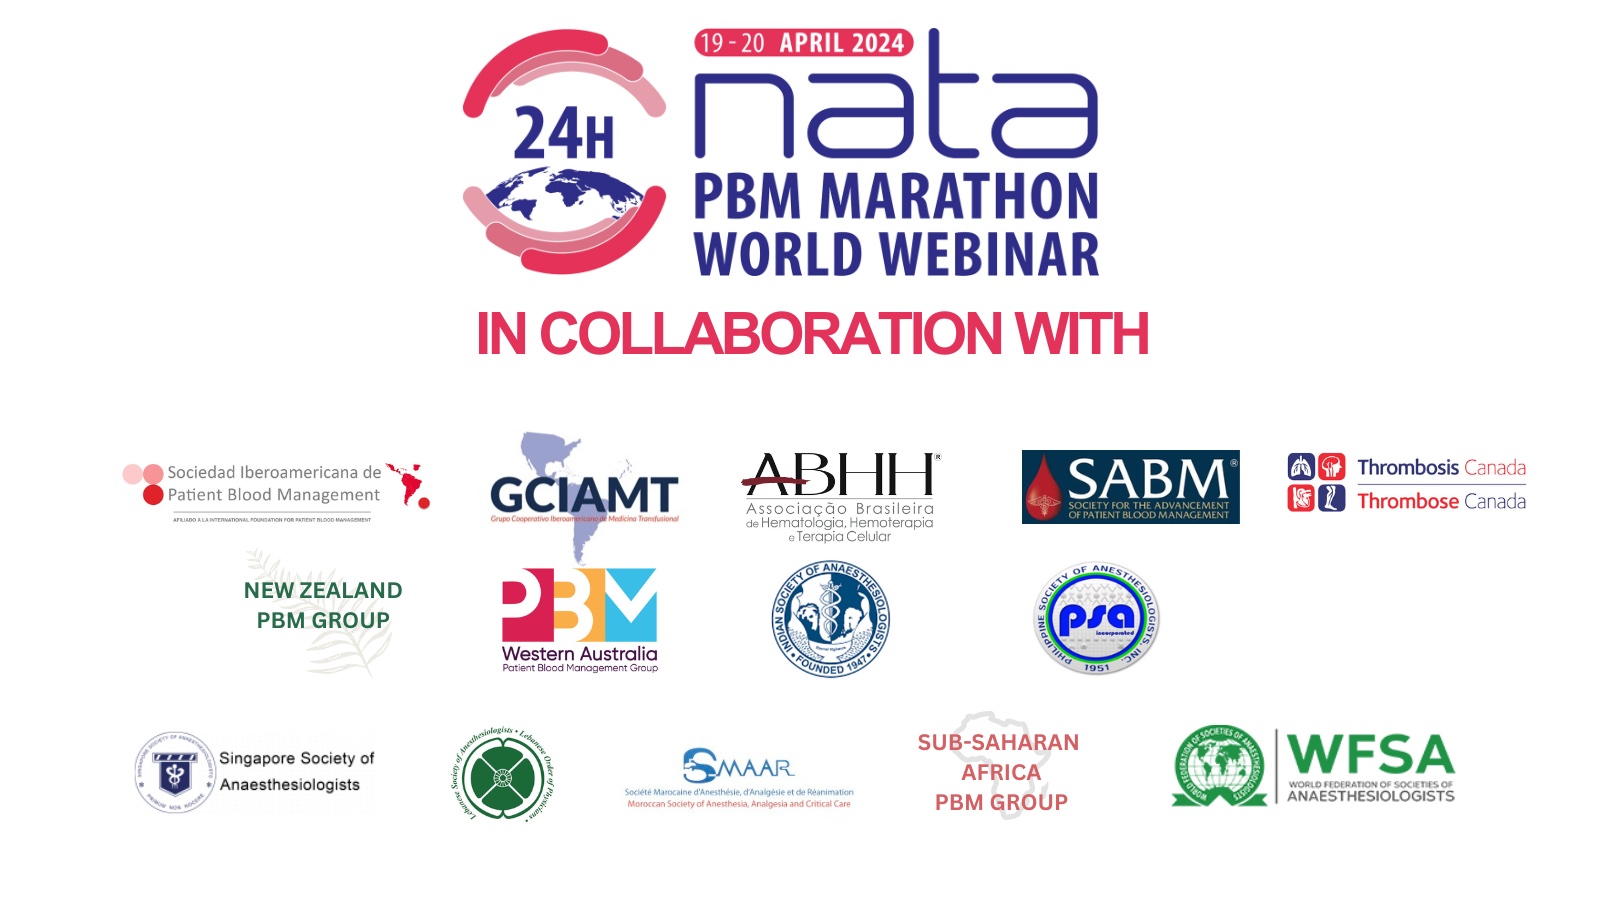 La WFSA participa en el Maratón de PBM 2024 de la NATA